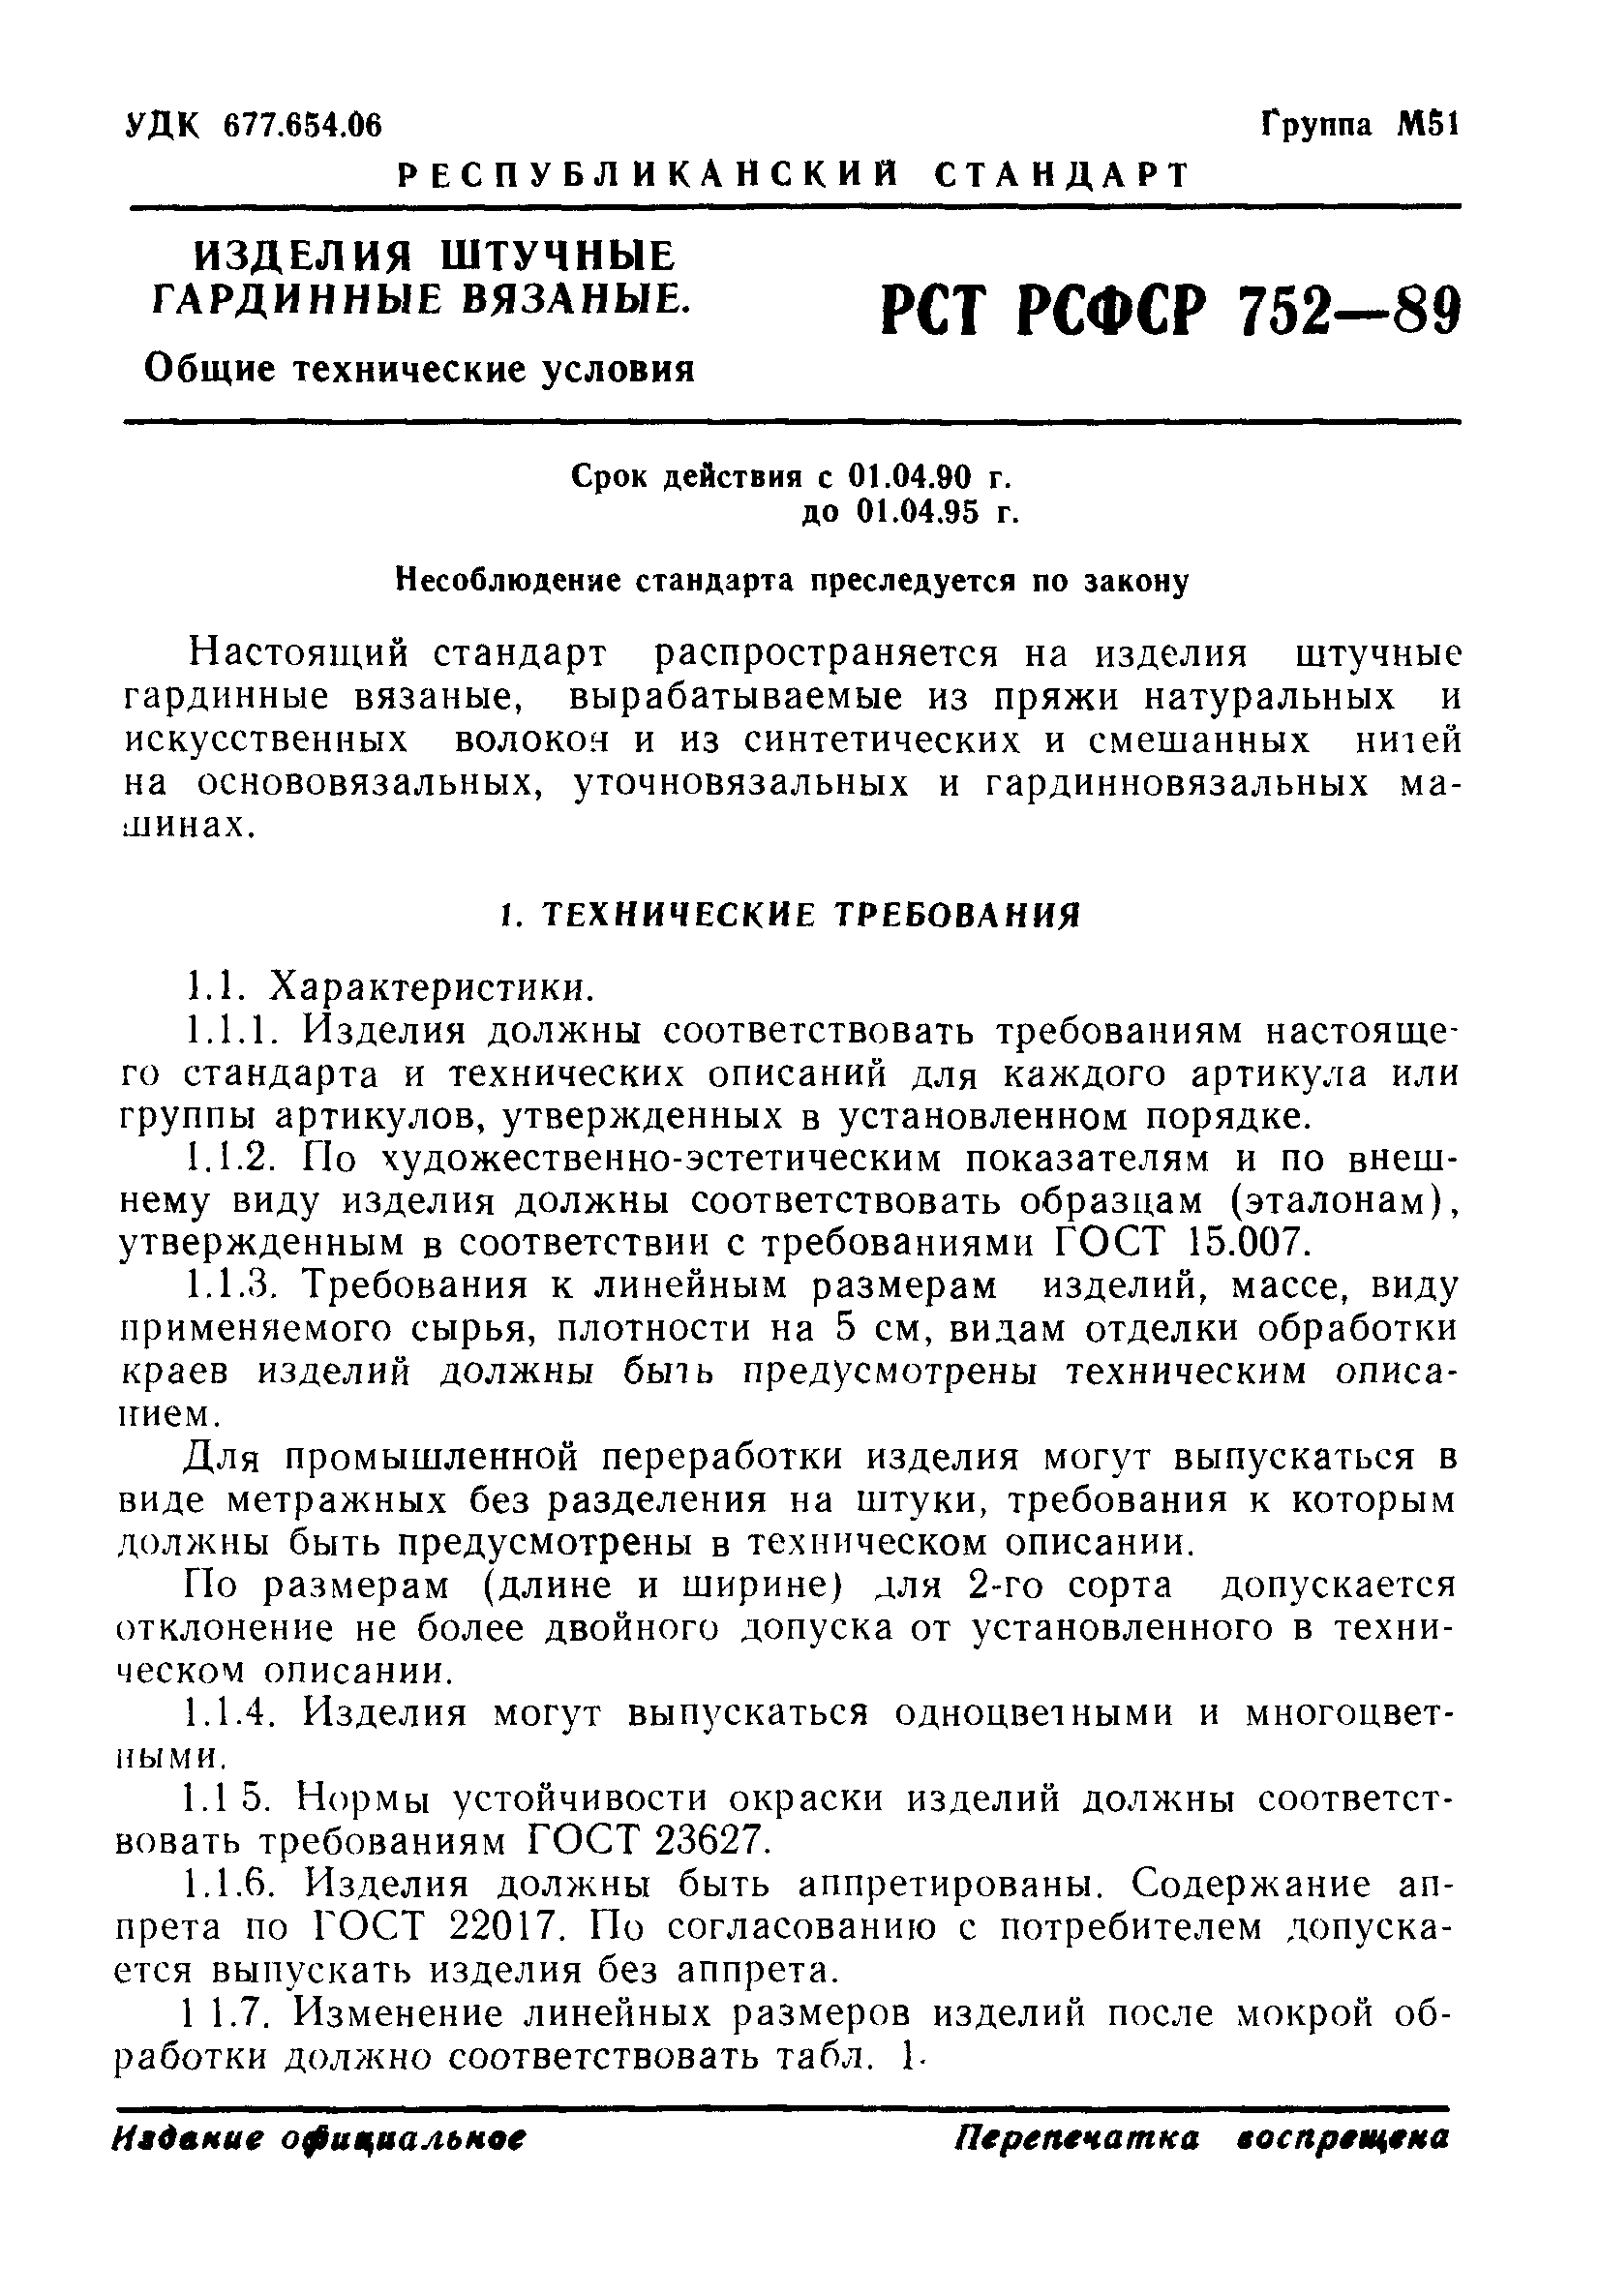 РСТ РСФСР 752-89